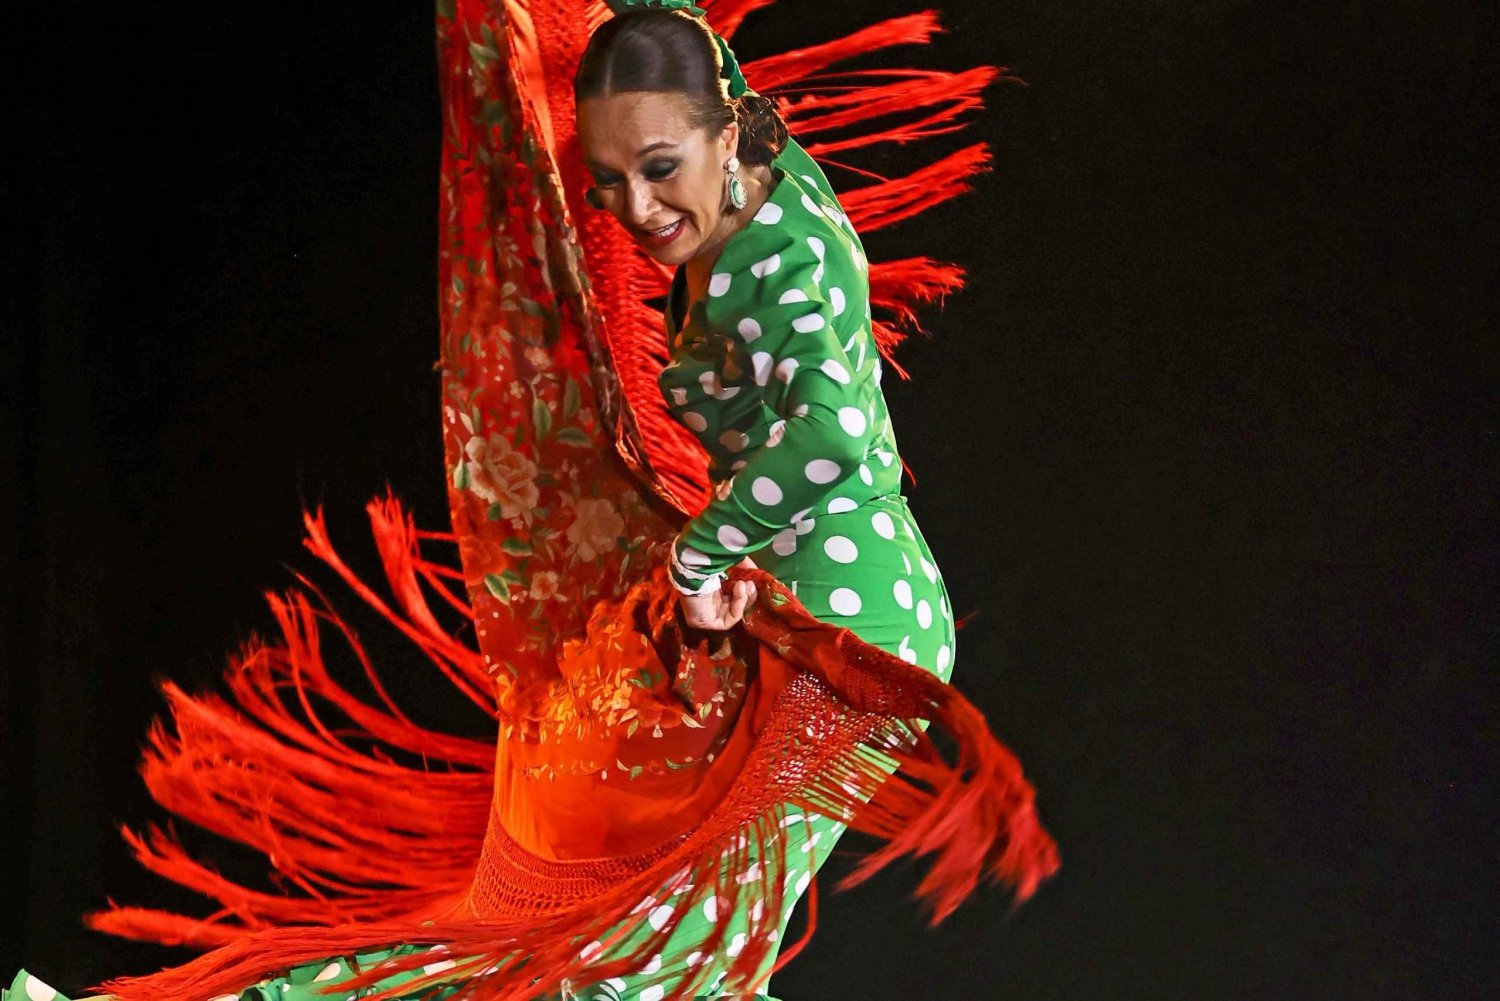 Palma: Show de flamenco no Tablao Flamenco Alma com bebida